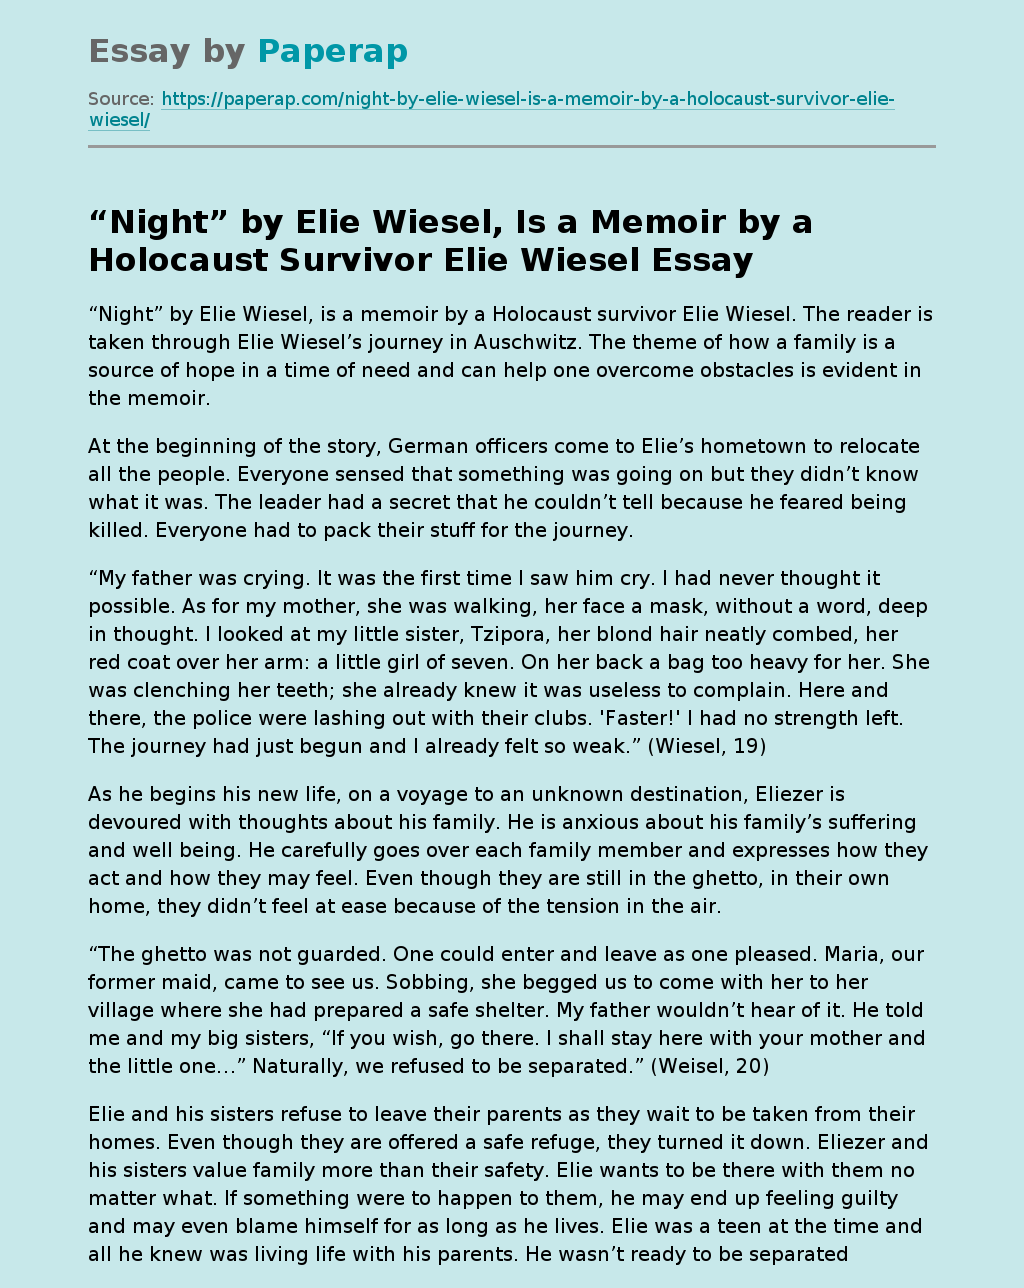 “Night” by Elie Wiesel, Is a Memoir by a Holocaust Survivor Elie Wiesel